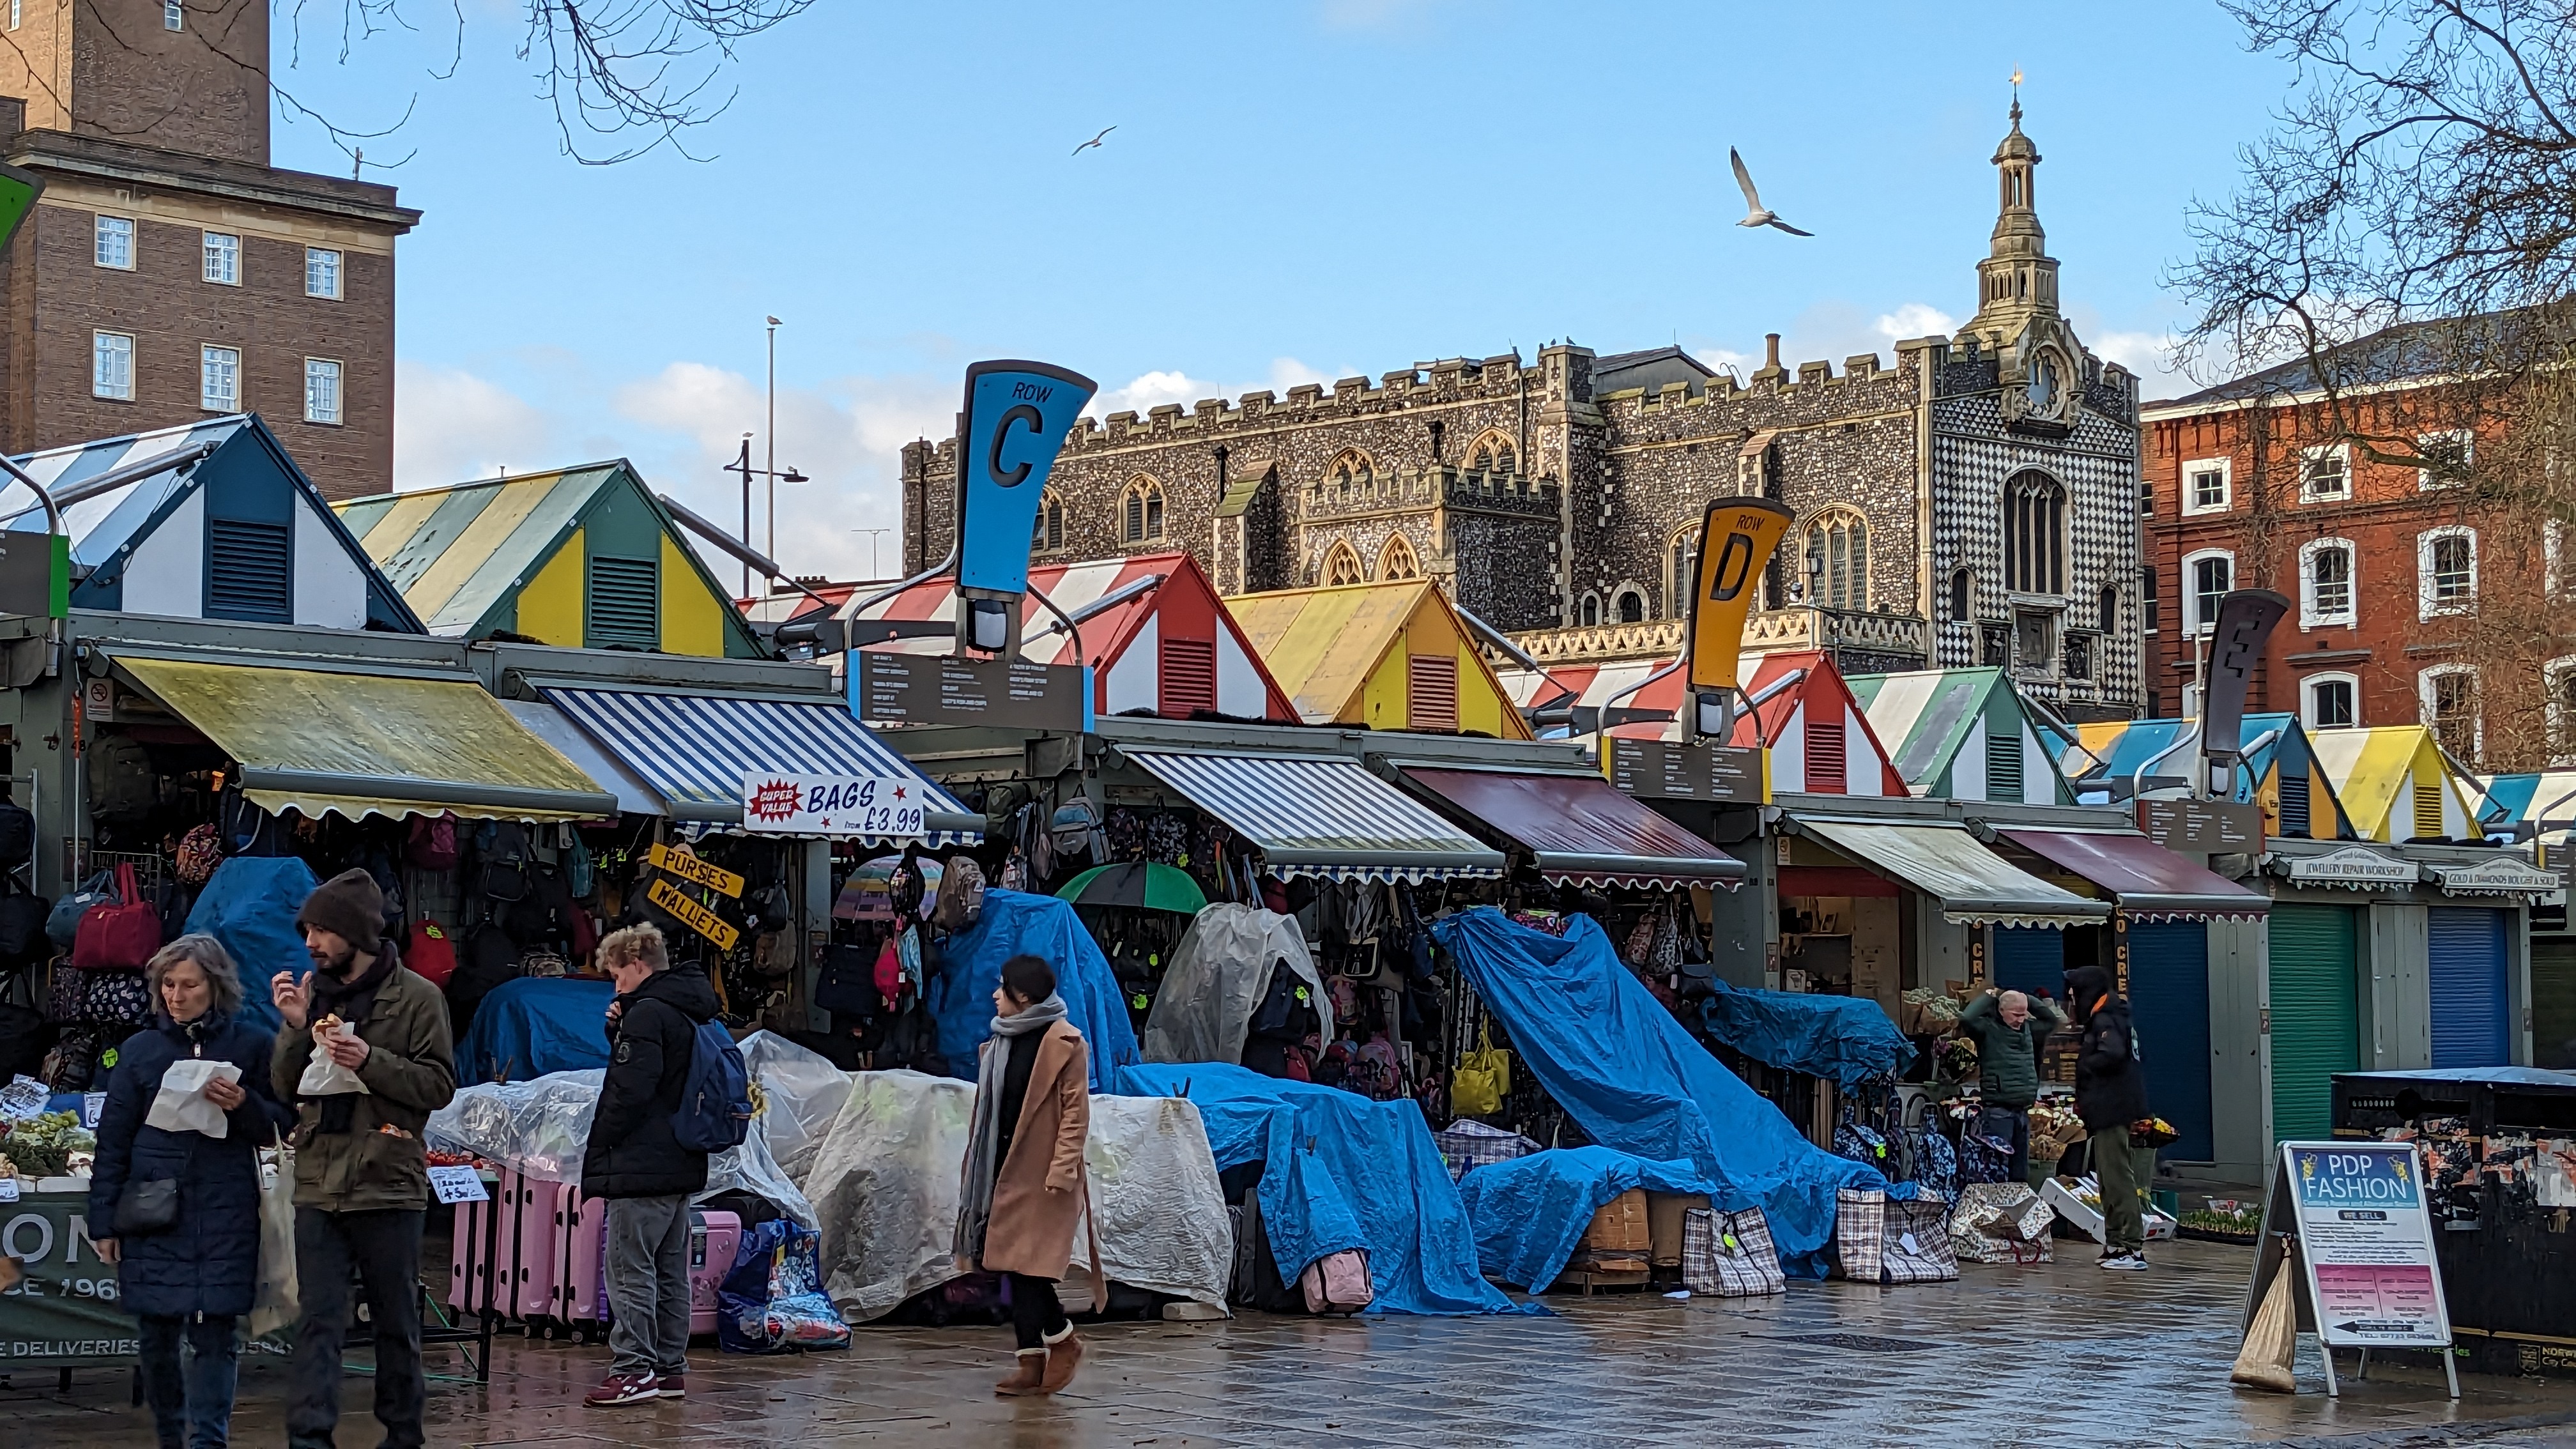 Local business praises Norwich Market ‘pop-ups’